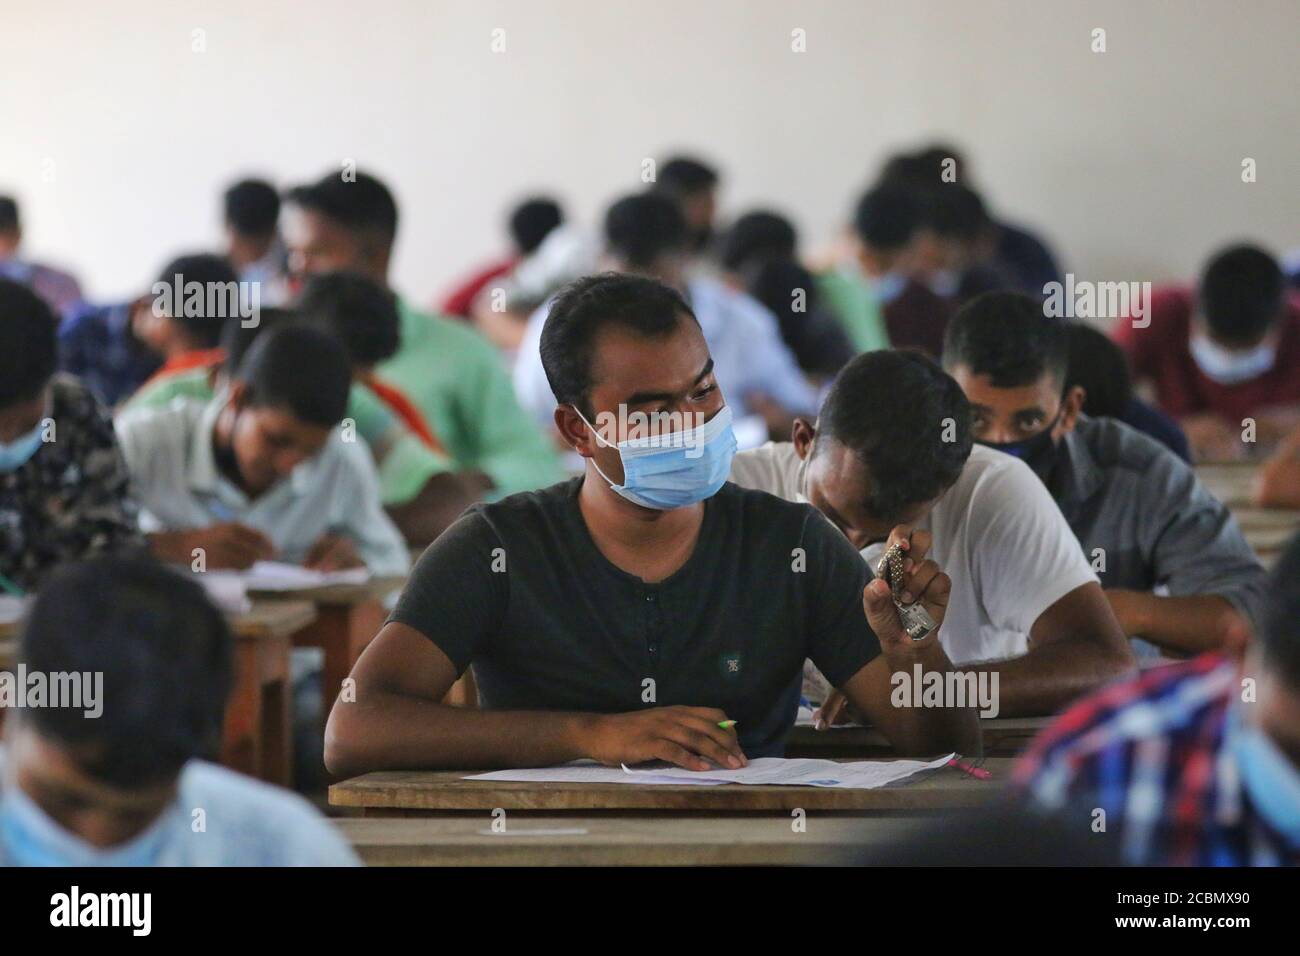 Les candidats portant un masque facial comme mesure préventive lors d'un test de recrutement pour un poste de pompier sous le service des incendies et la Défense civile dans un collège dans un contexte de crise du coronavirus (COVID-19) à Dhaka. Banque D'Images